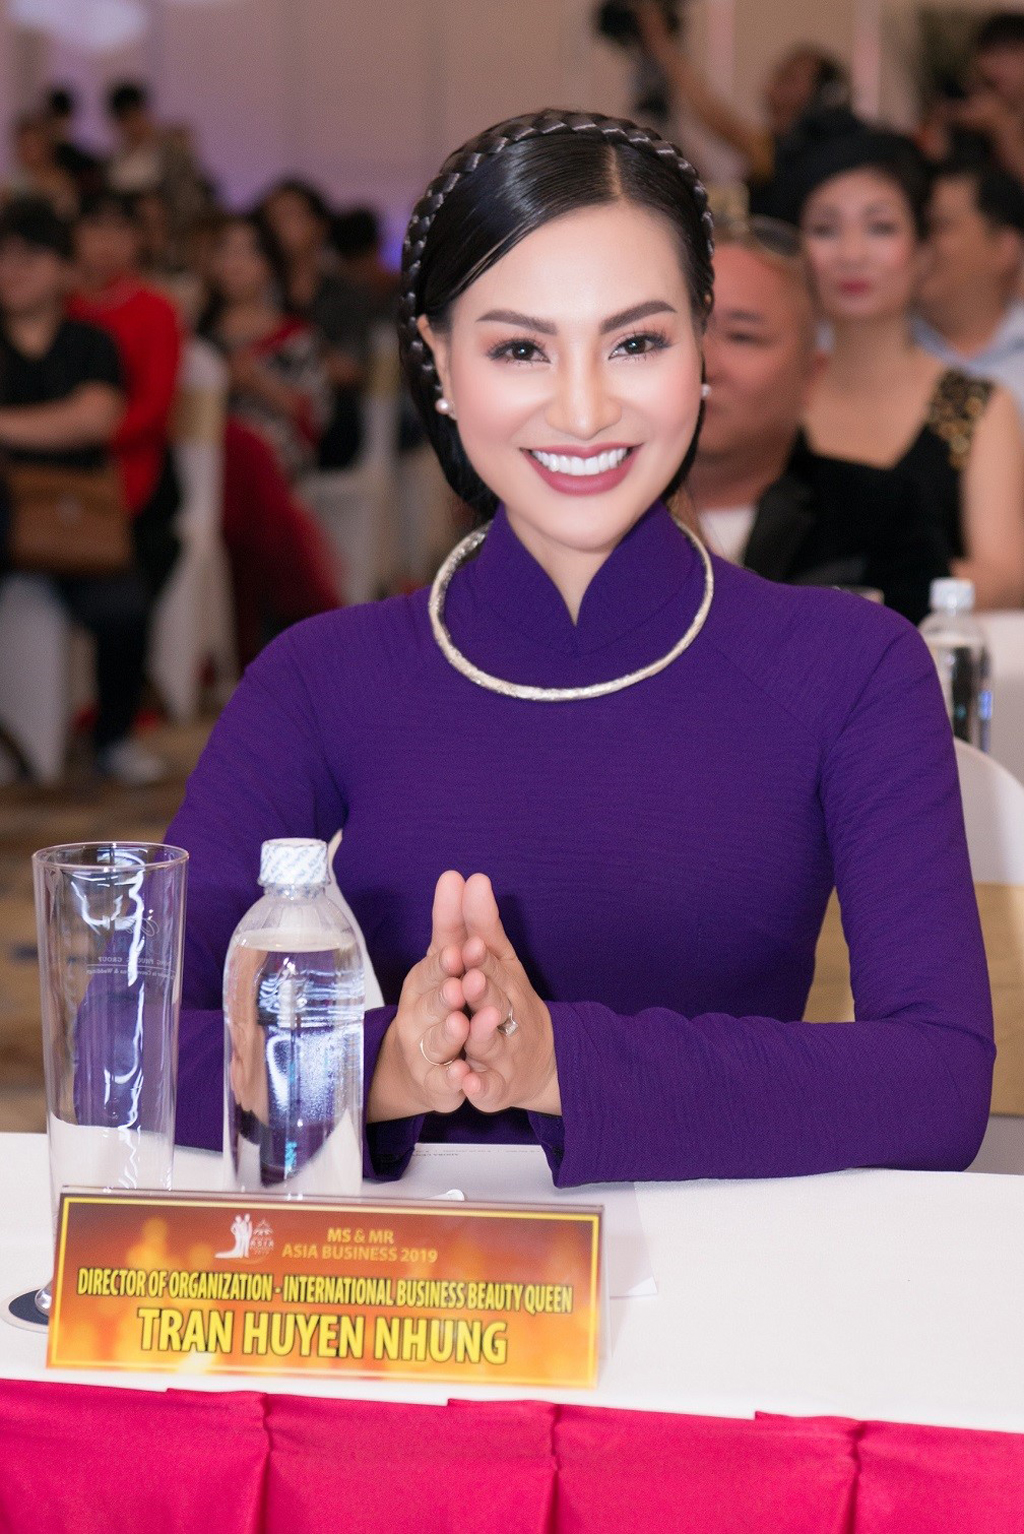 Bà Trần Huyền Nhung - Trưởng ban tổ chức dự án Ms & Mr Asia Business 2019